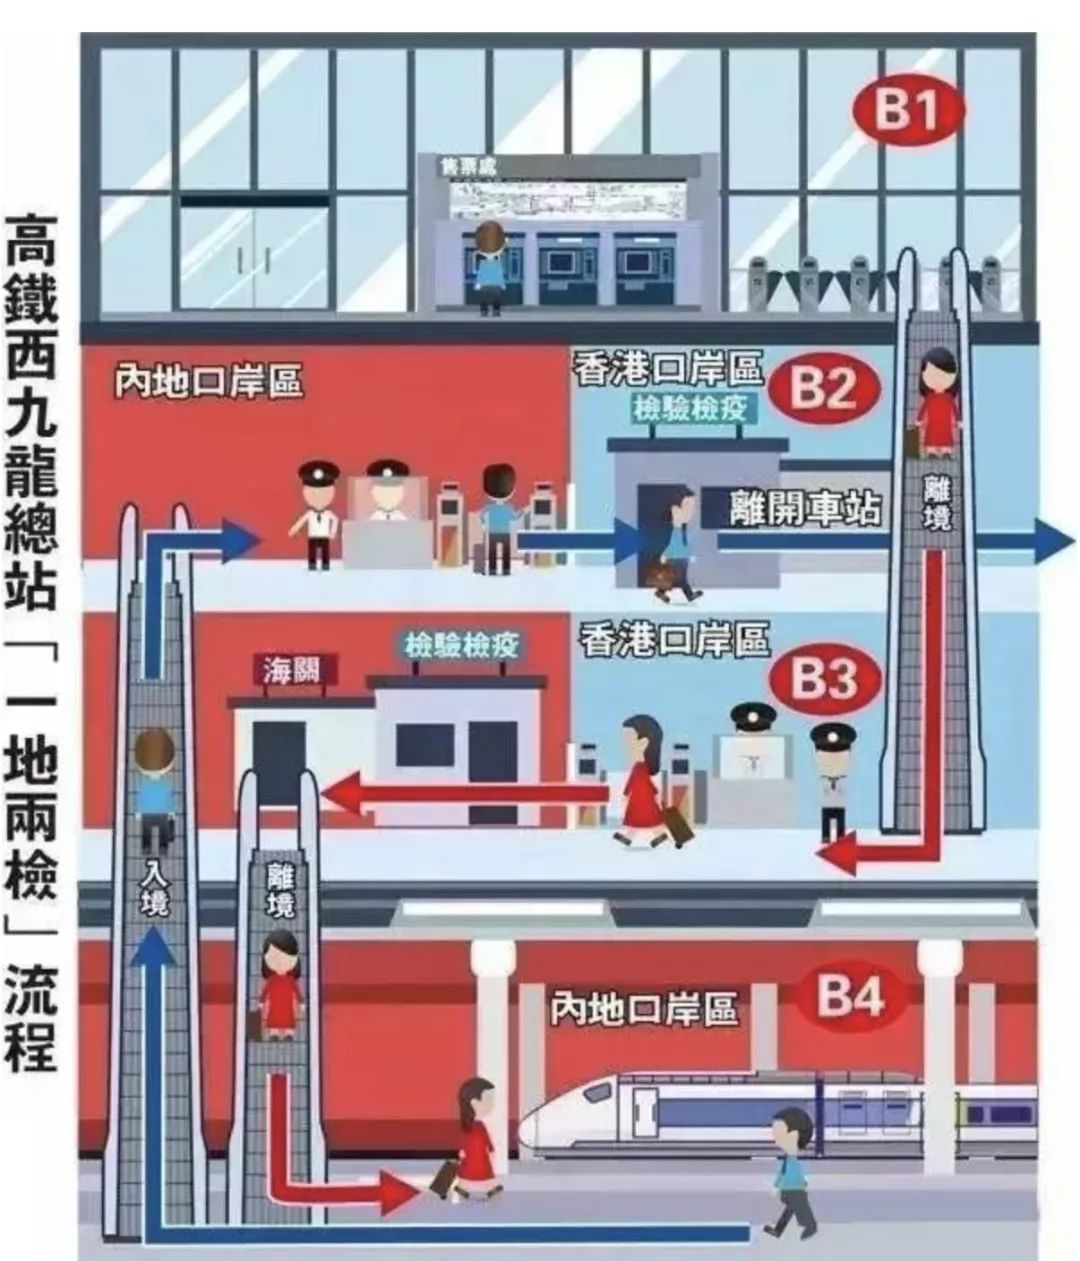 后天开始预售苏州人买2张高铁票就能到香港了票价换乘攻略看好